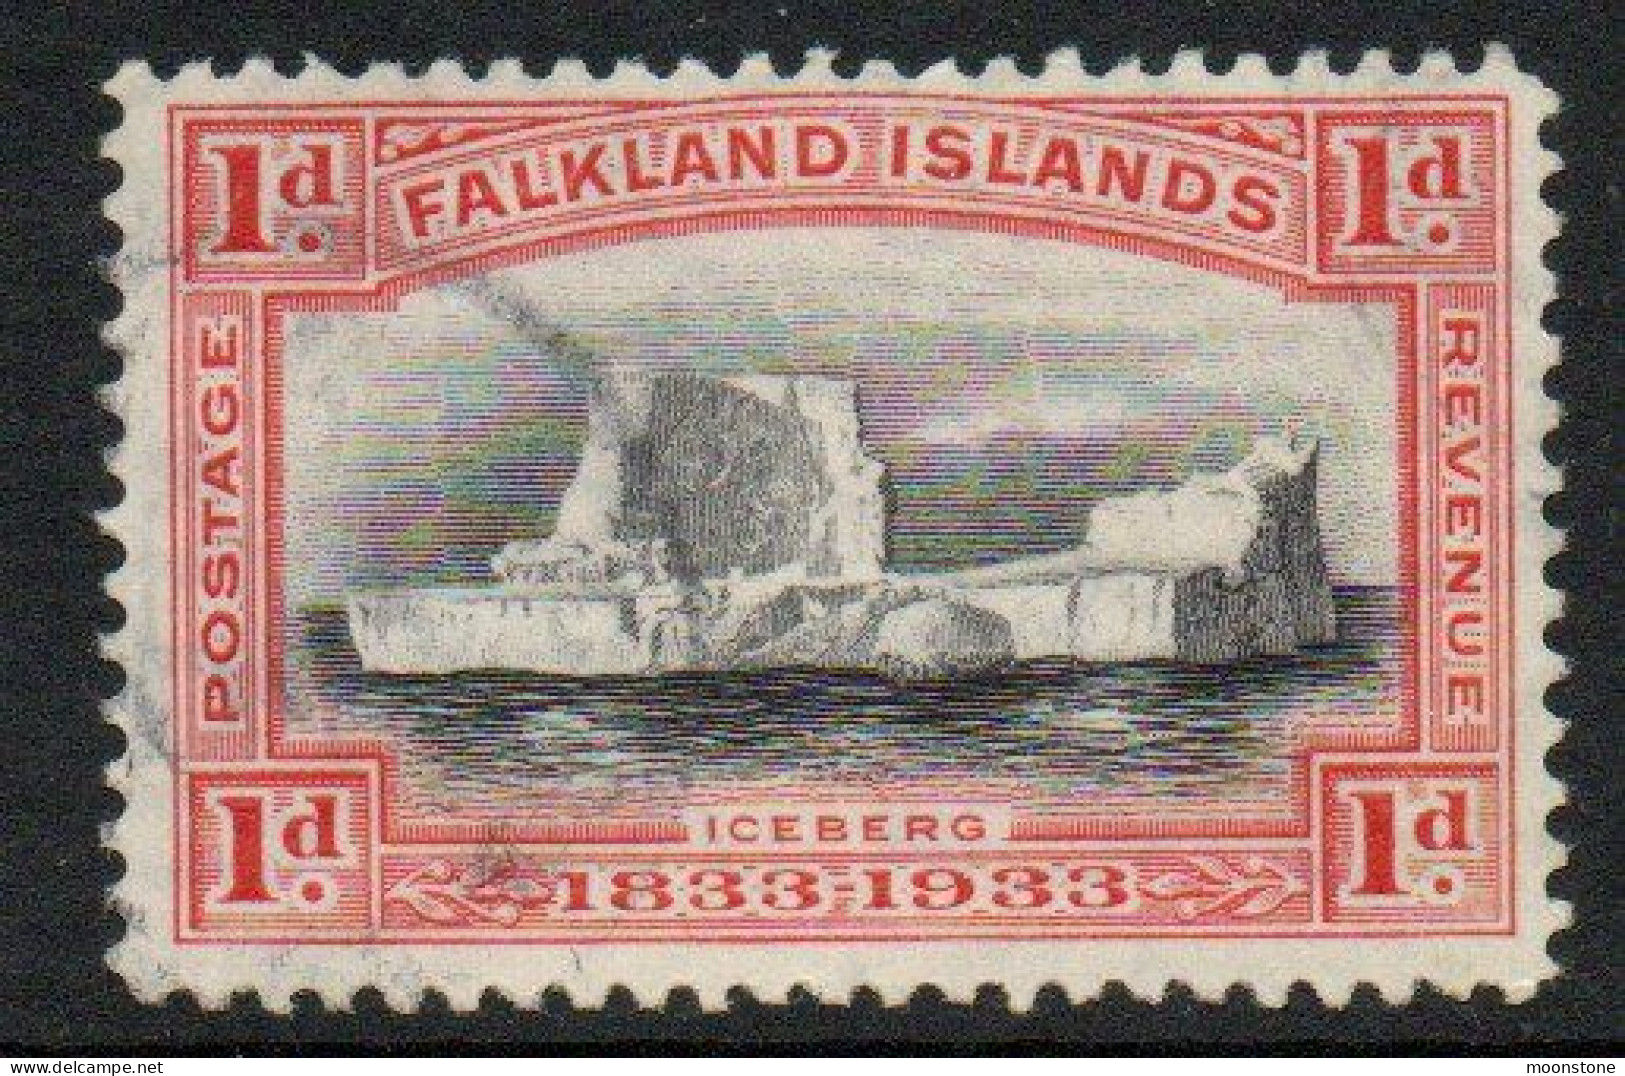 Falkland Islands GV 1933 Centenary 1d Value, Wmk. Multiple Script CA, Used, SG 128 - Falklandinseln